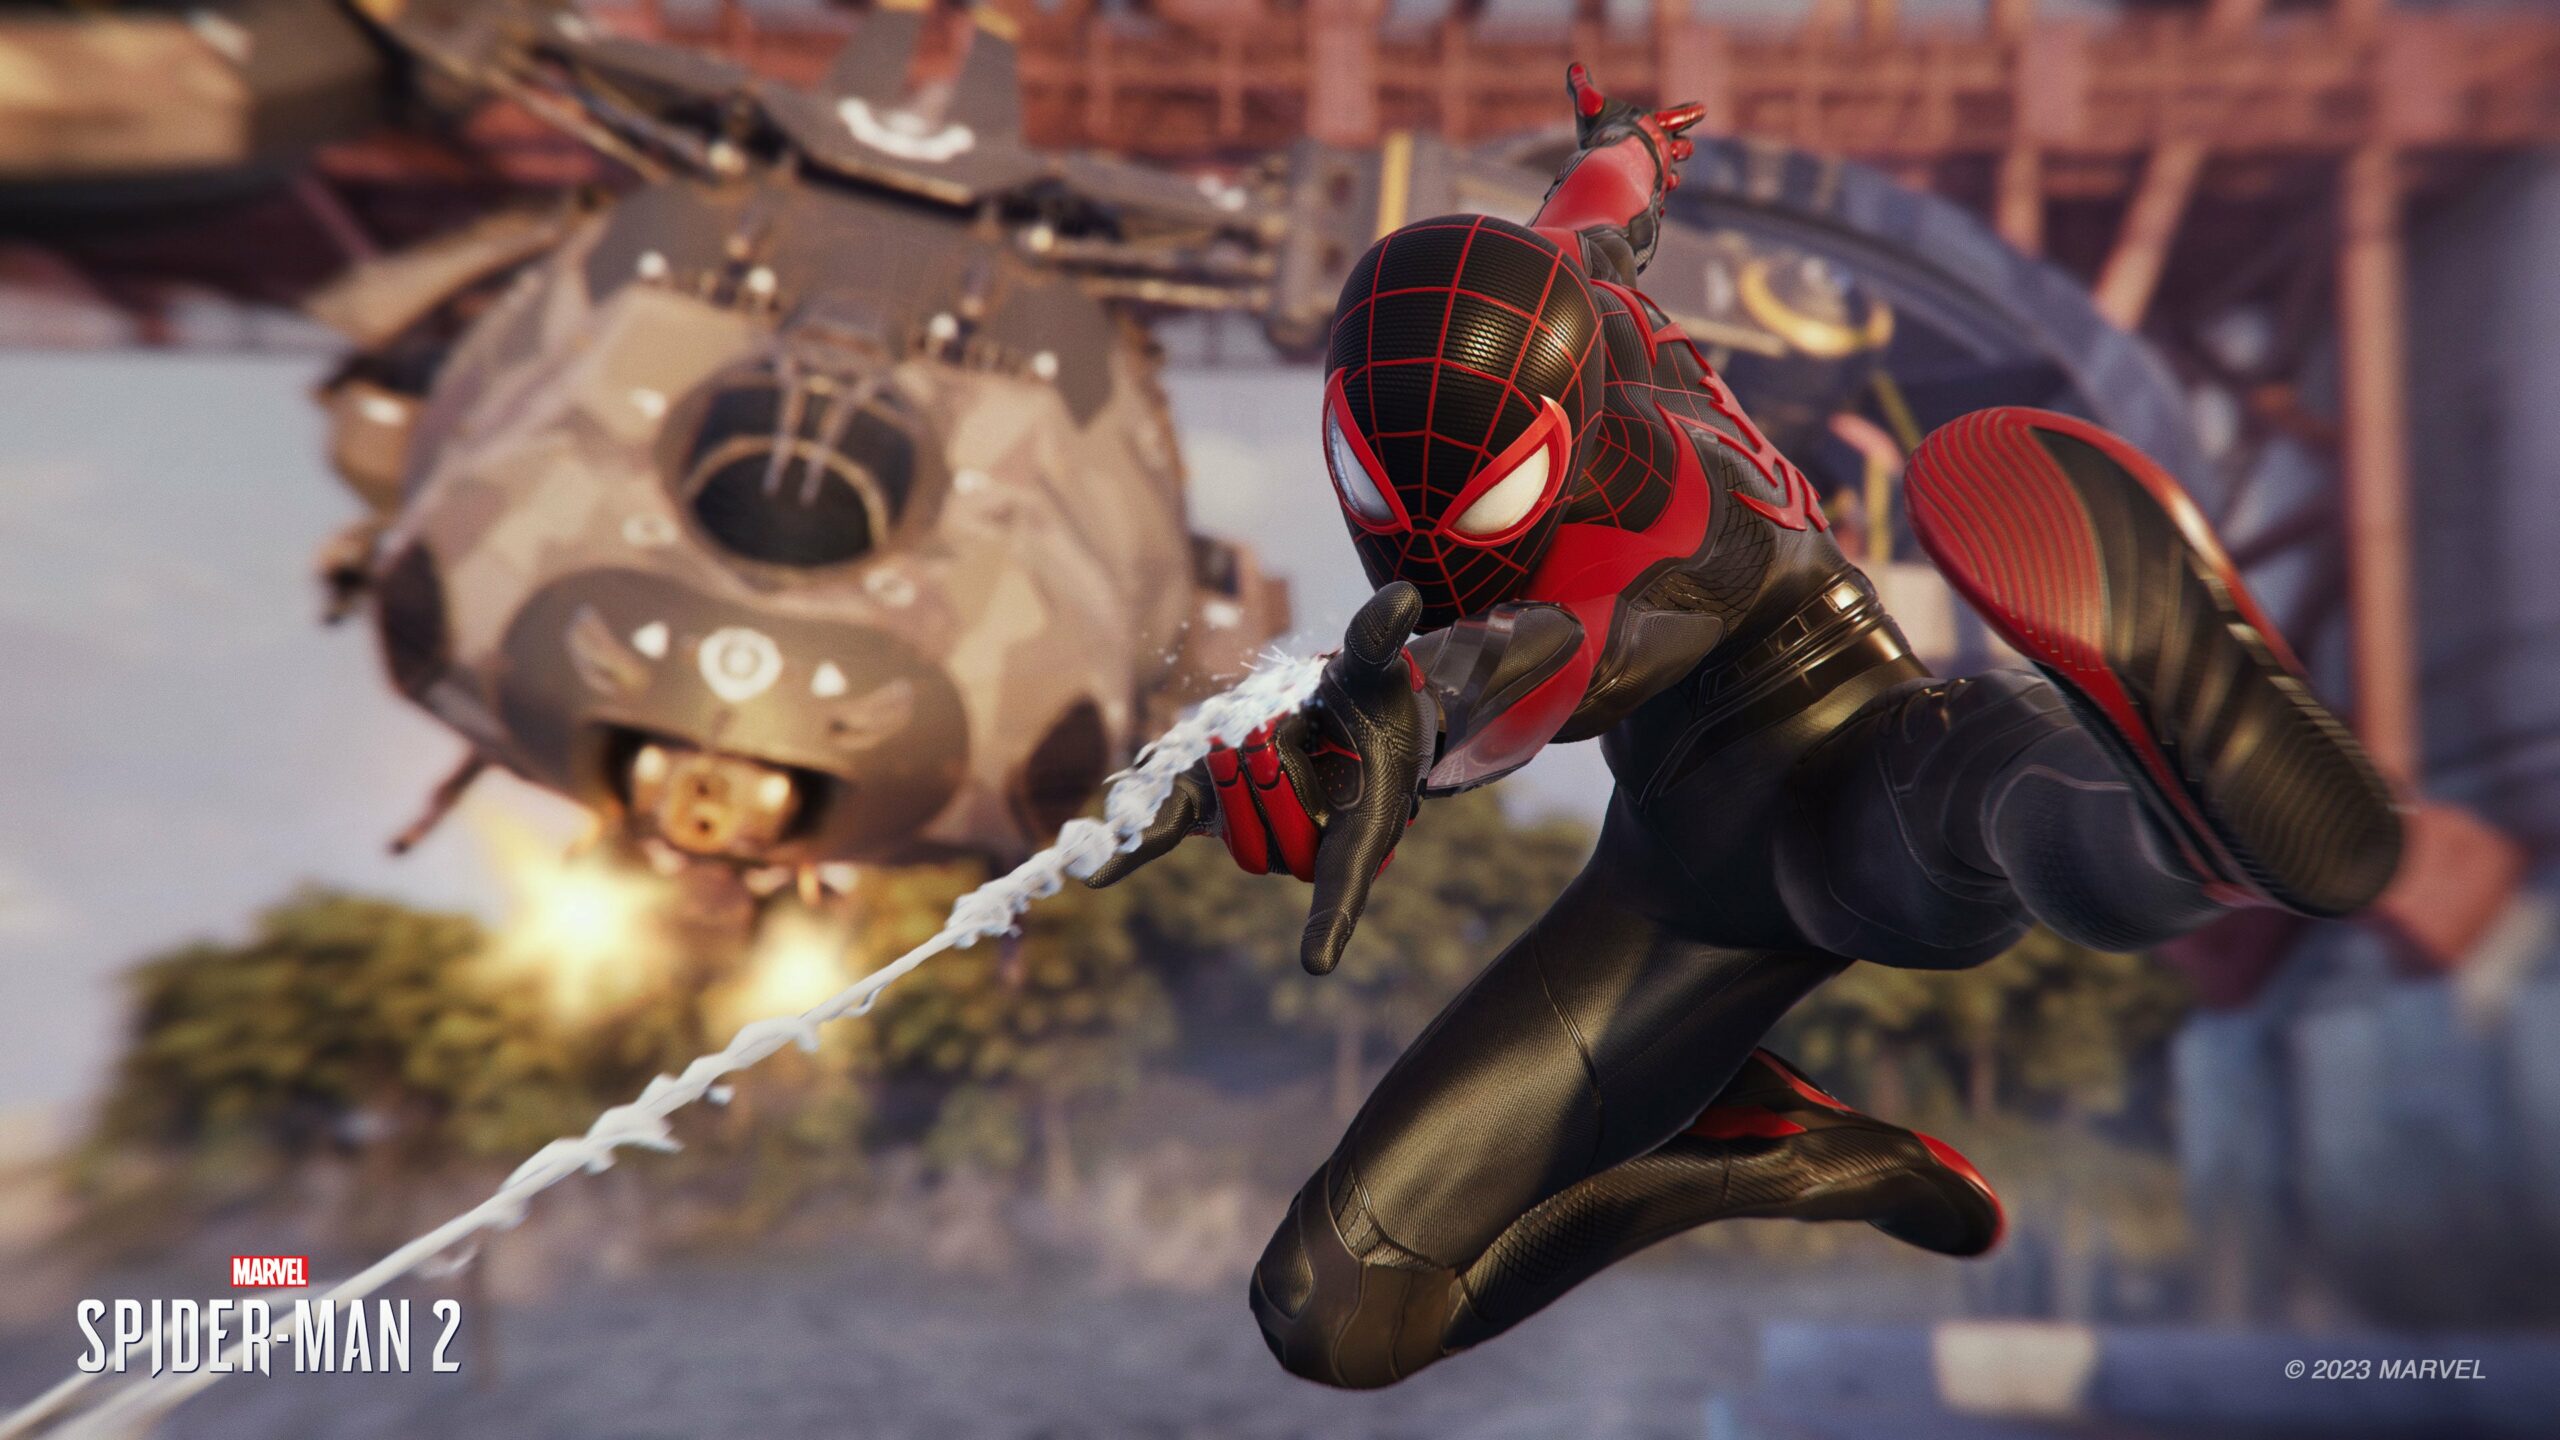 Insomniac Games ogłosiło, że Spider-Man 2 będzie miał swój własny panel na Comic-Con 20 lipca